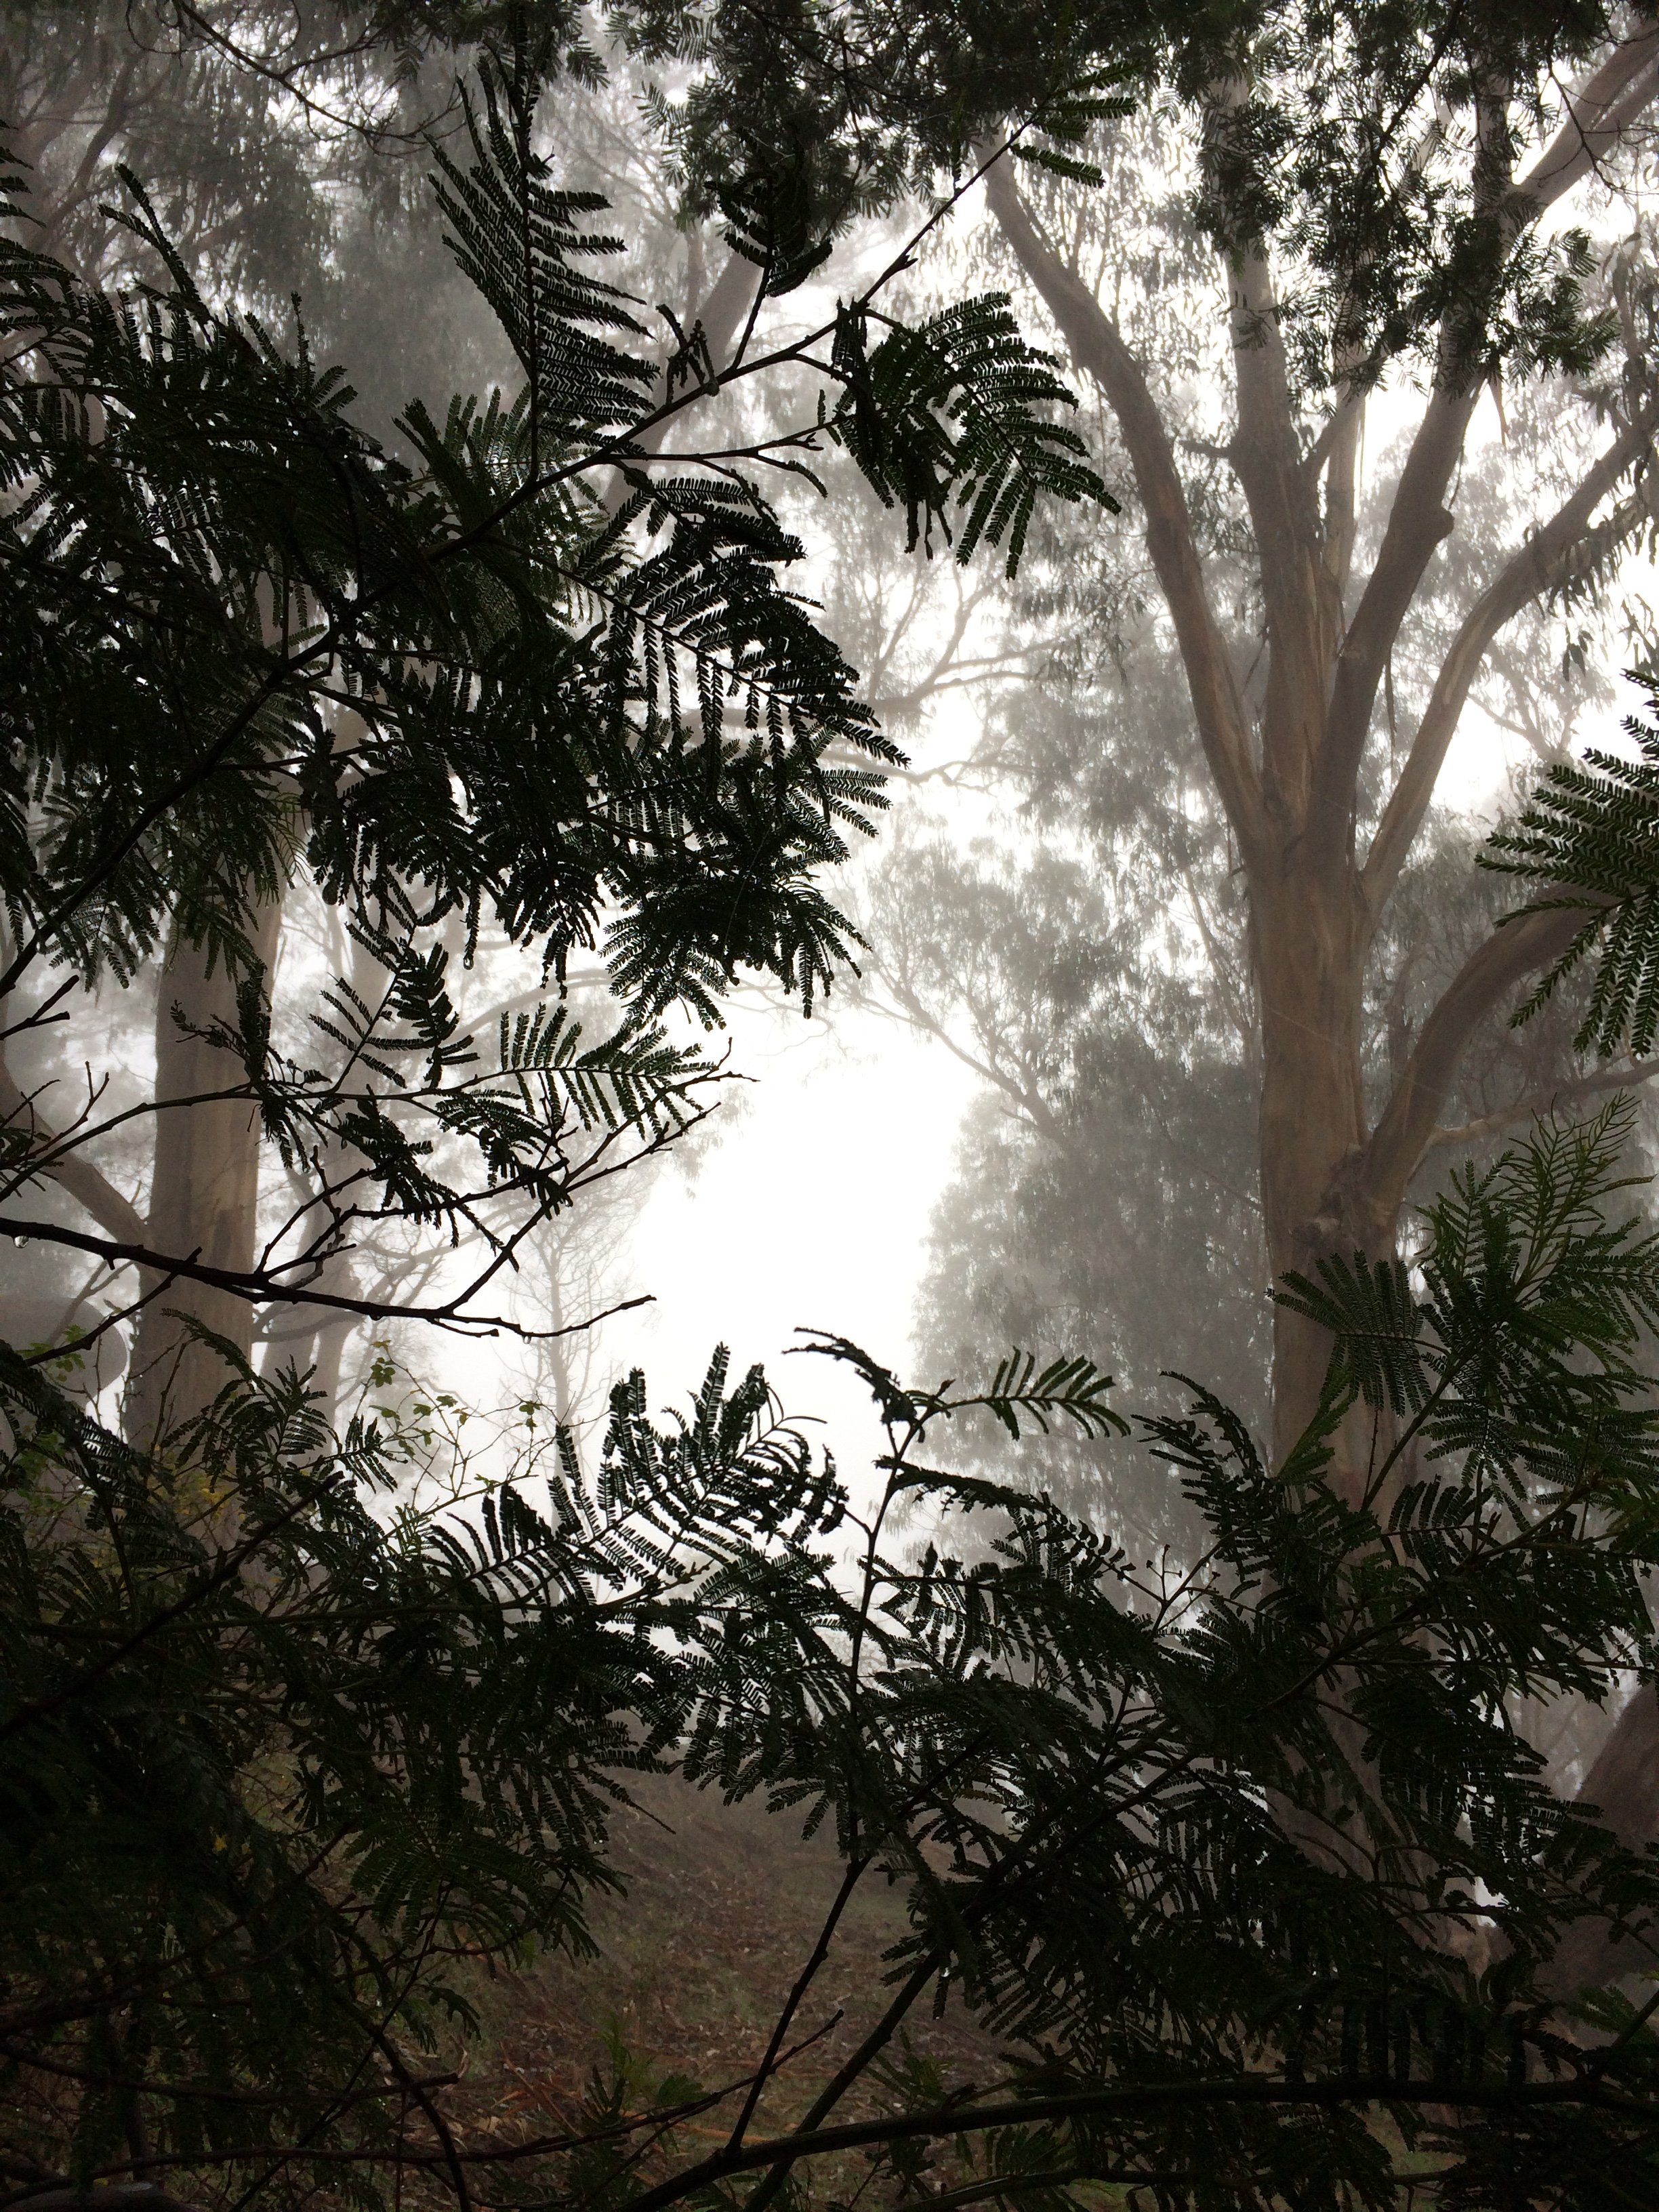 01 IMG_7798 - 31.5.20 trees in fog.jpg